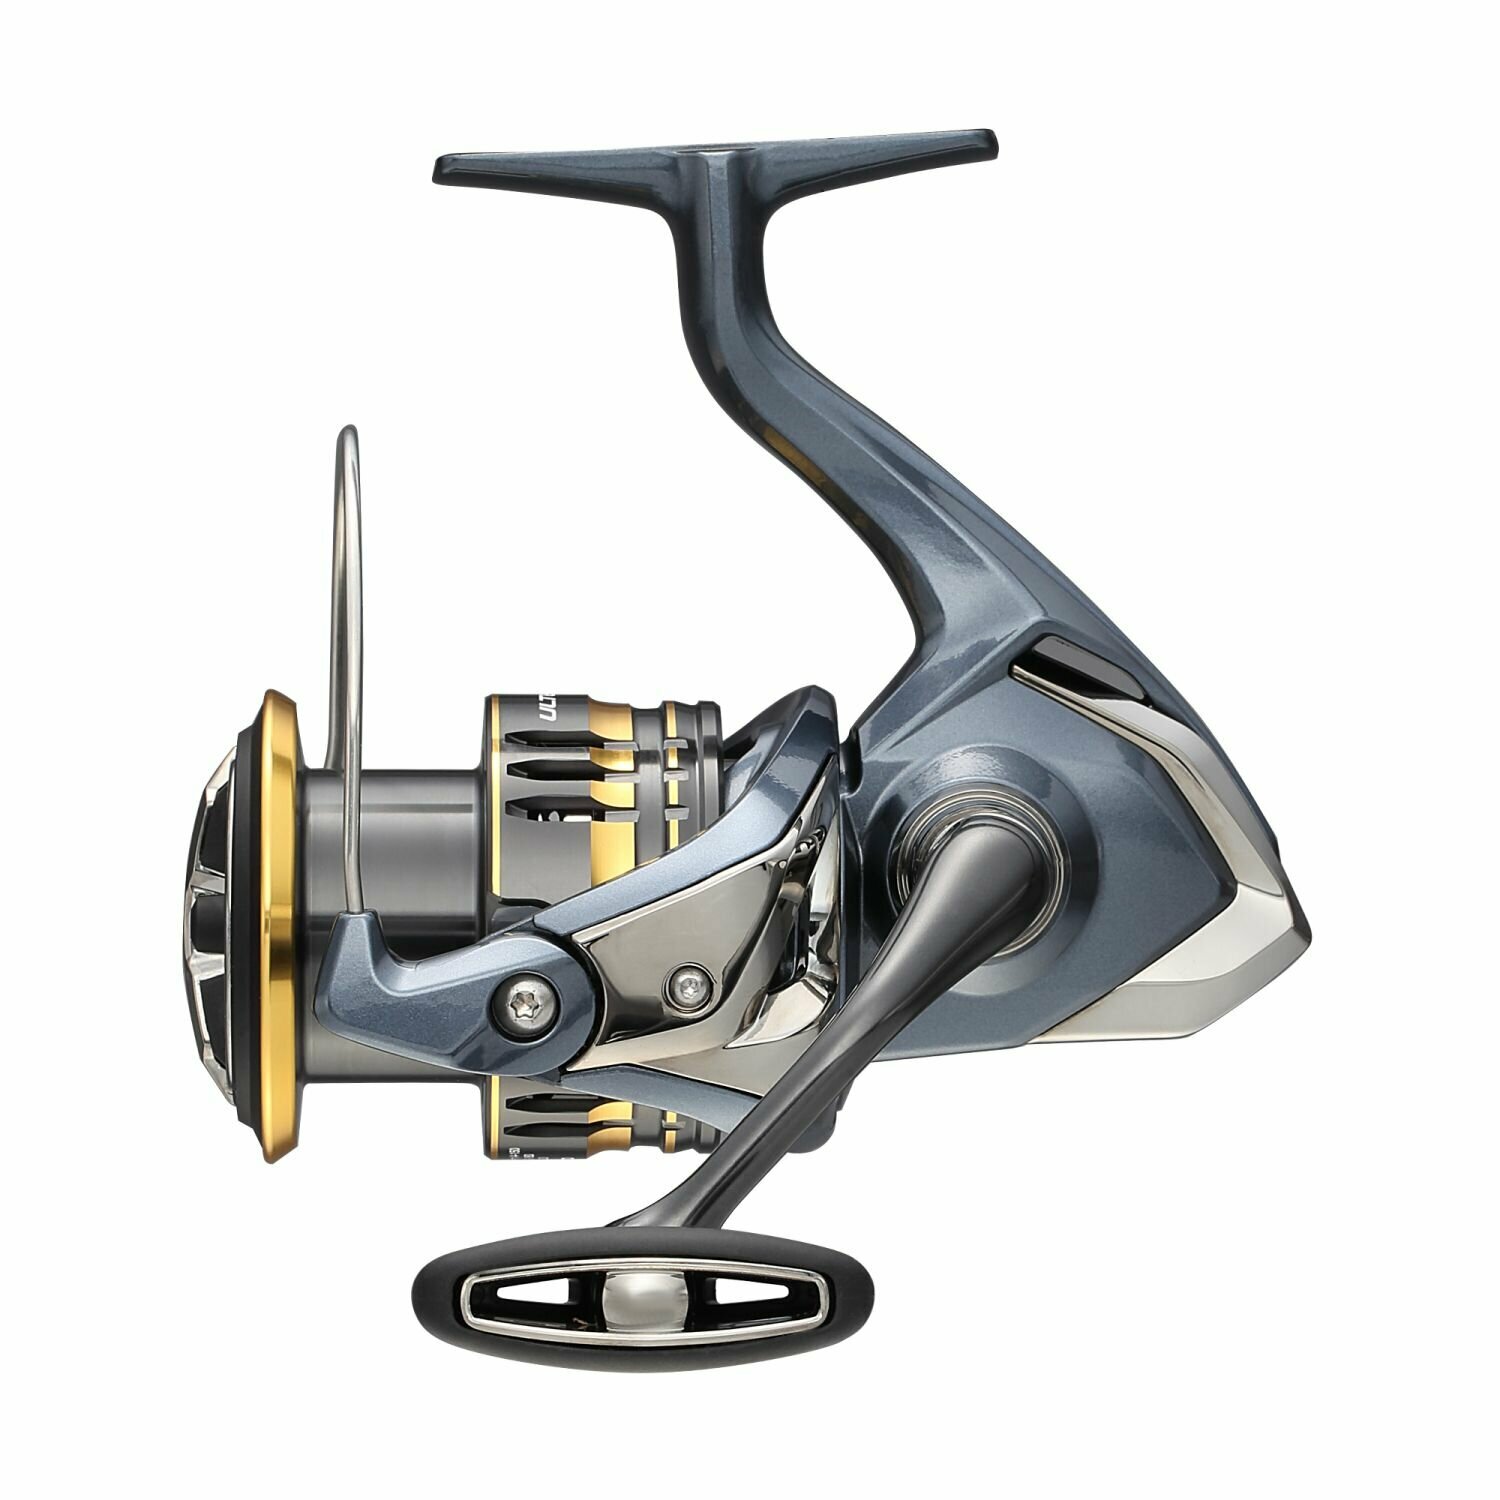 Катушка для рыбалки Shimano 21 Ultegra 2500SHG, безынерционная, для спиннинга, на щуку, окуня, судака, форель